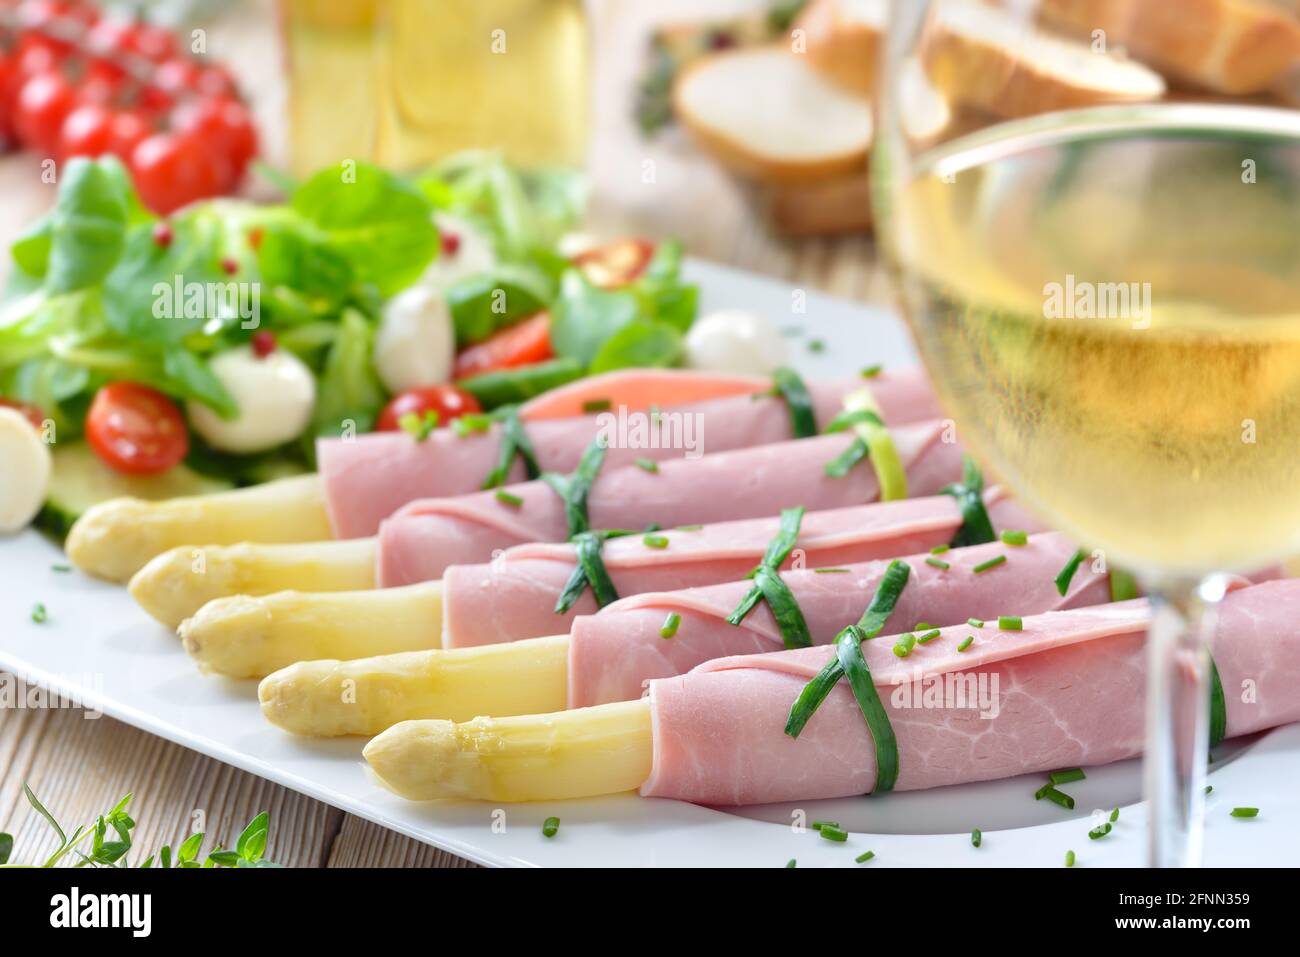 Deliciosa ensalada de primavera con espárragos enrollados en jamón cocido en una fuente blanca, servida con un vino blanco seco joven y rebanadas de baguette Foto de stock